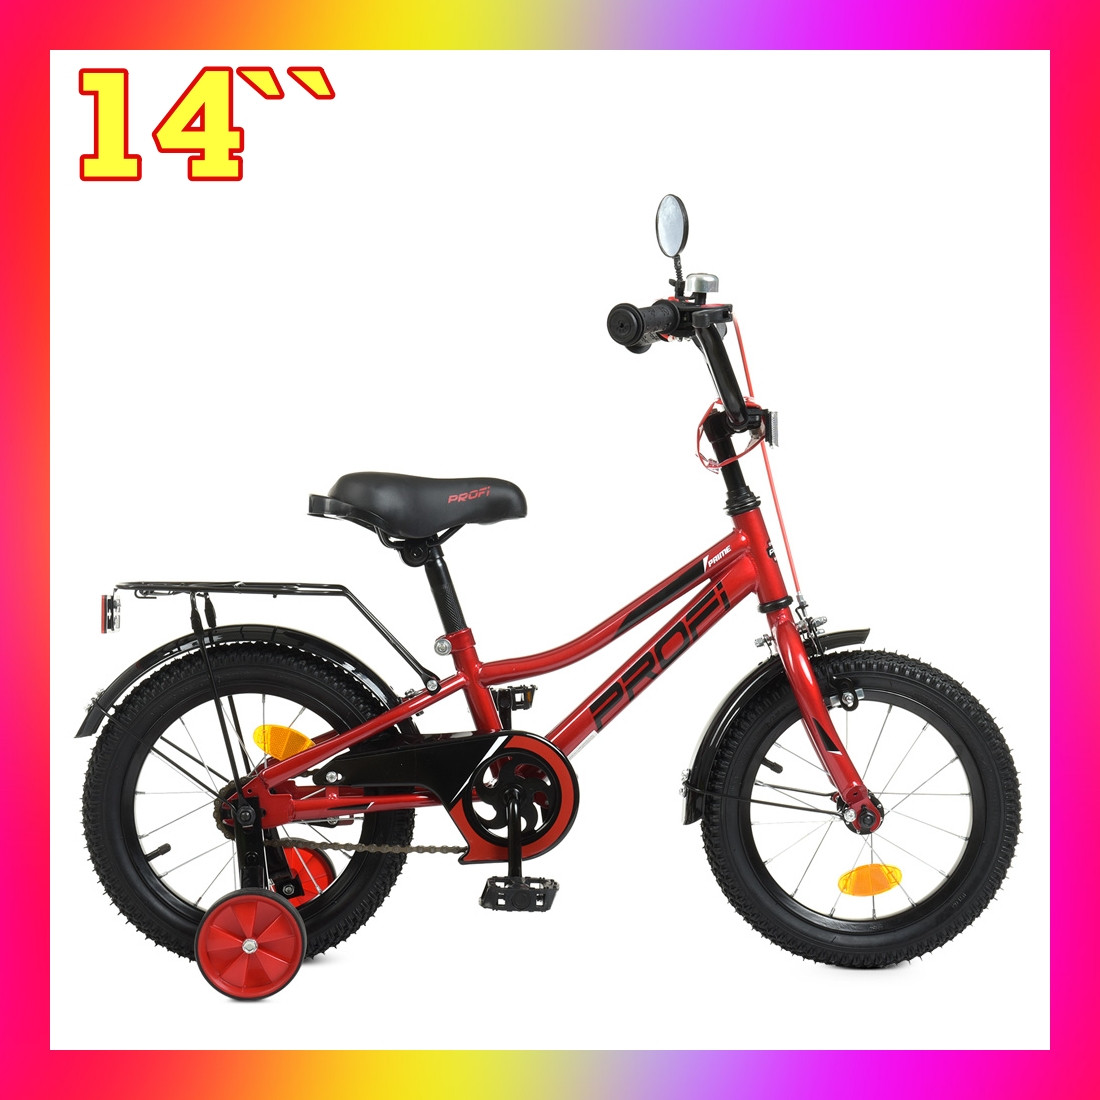 Дитячий двоколісний велосипед Profi PRIME 14 дюймів, 14221 червоний. Для дітей 3-5 років